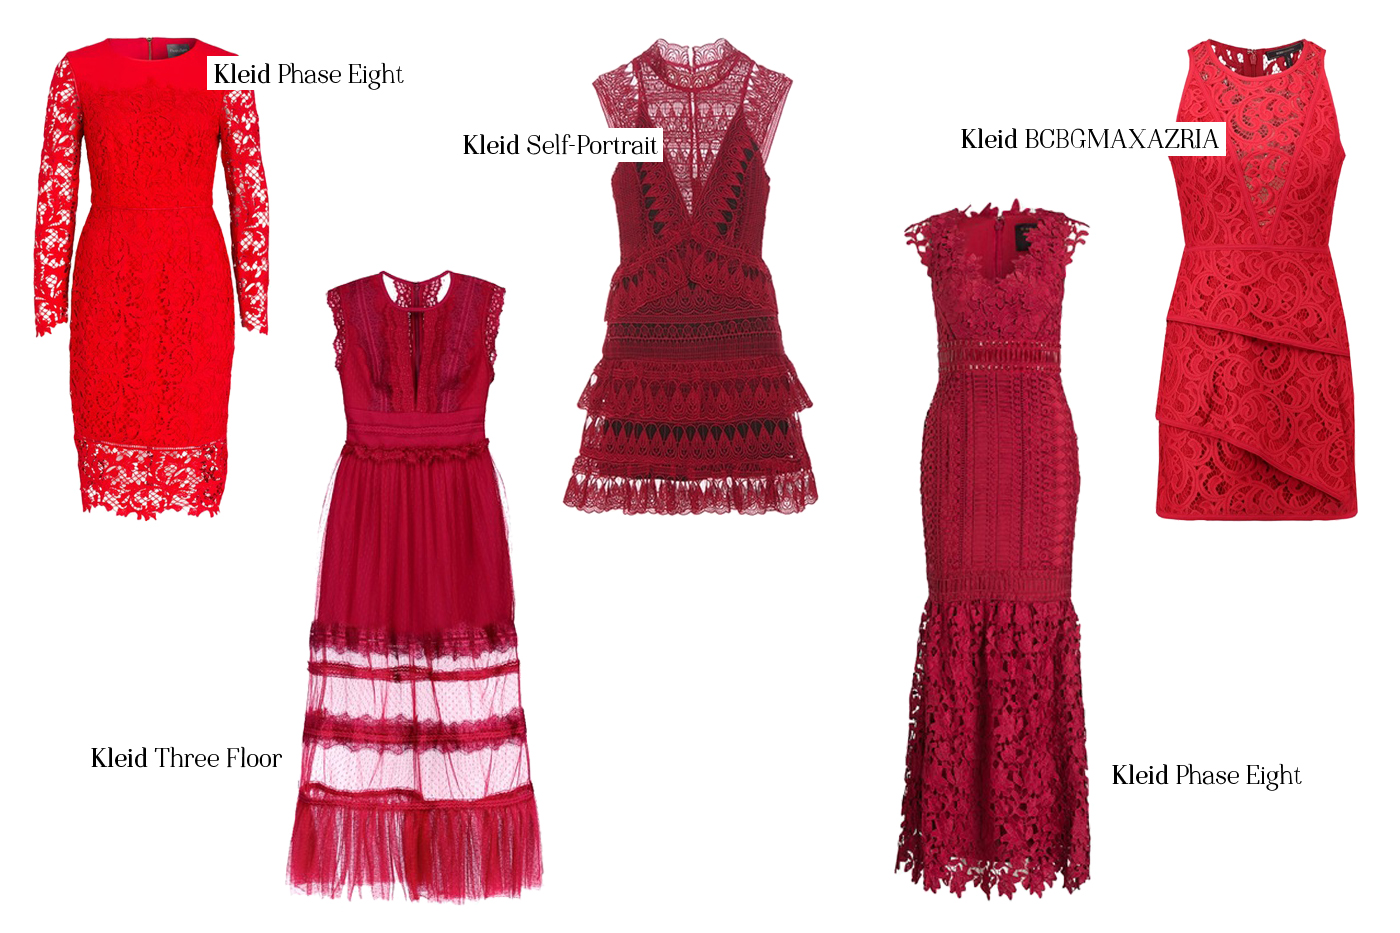 red-lace-cocktail-dress-xmas-fashion-fashionblog